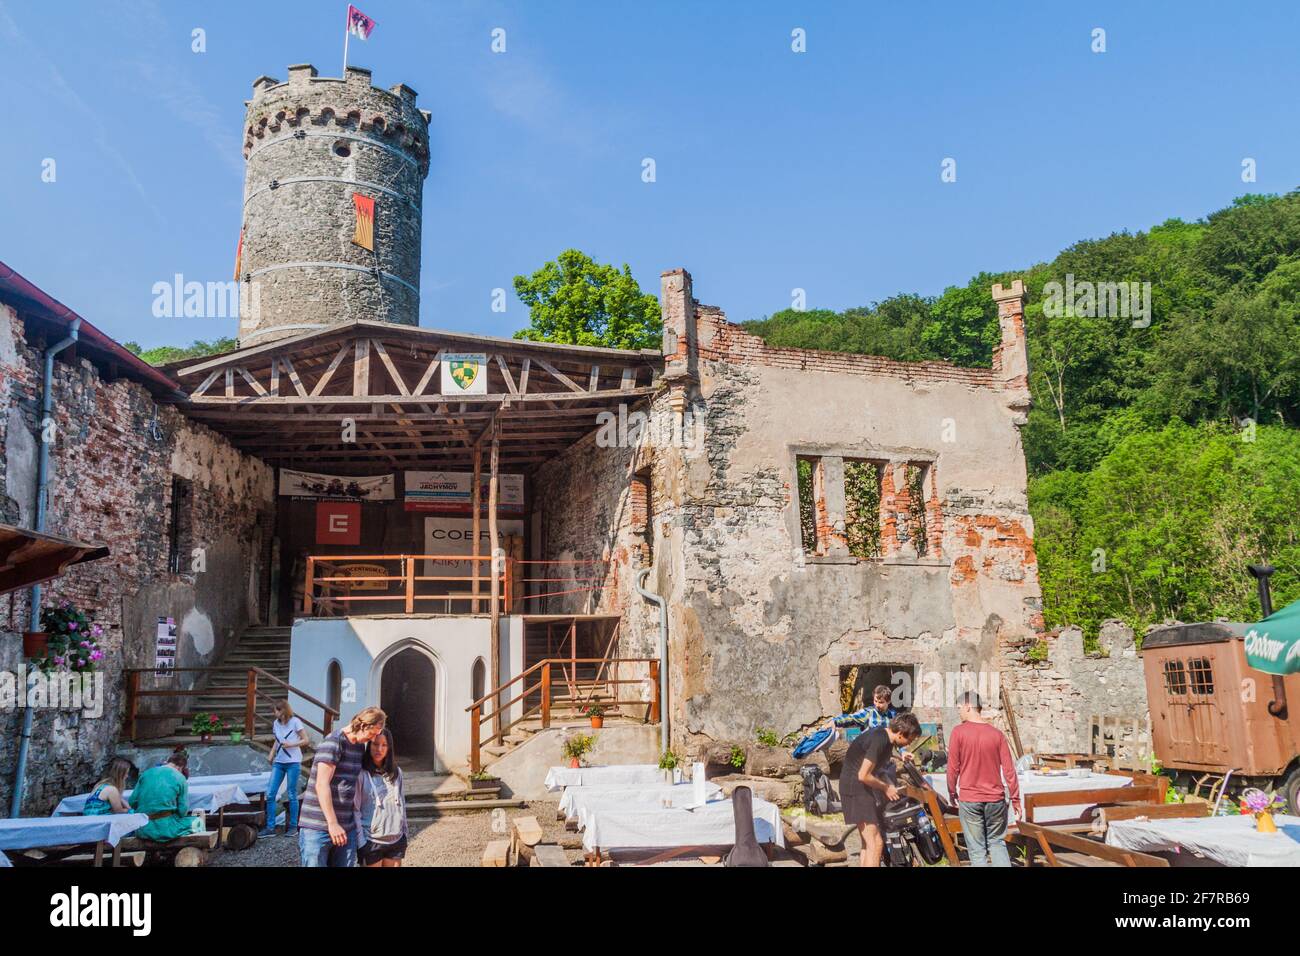 HORNI HRAD, TSCHECHISCHE REPUBLIK - 4. JUNI 2016: Touristen besuchen die Ruinen von Horni Hrad Hauenstein oder die Burg Hauenstejn in der Tschechischen Republik Stockfoto